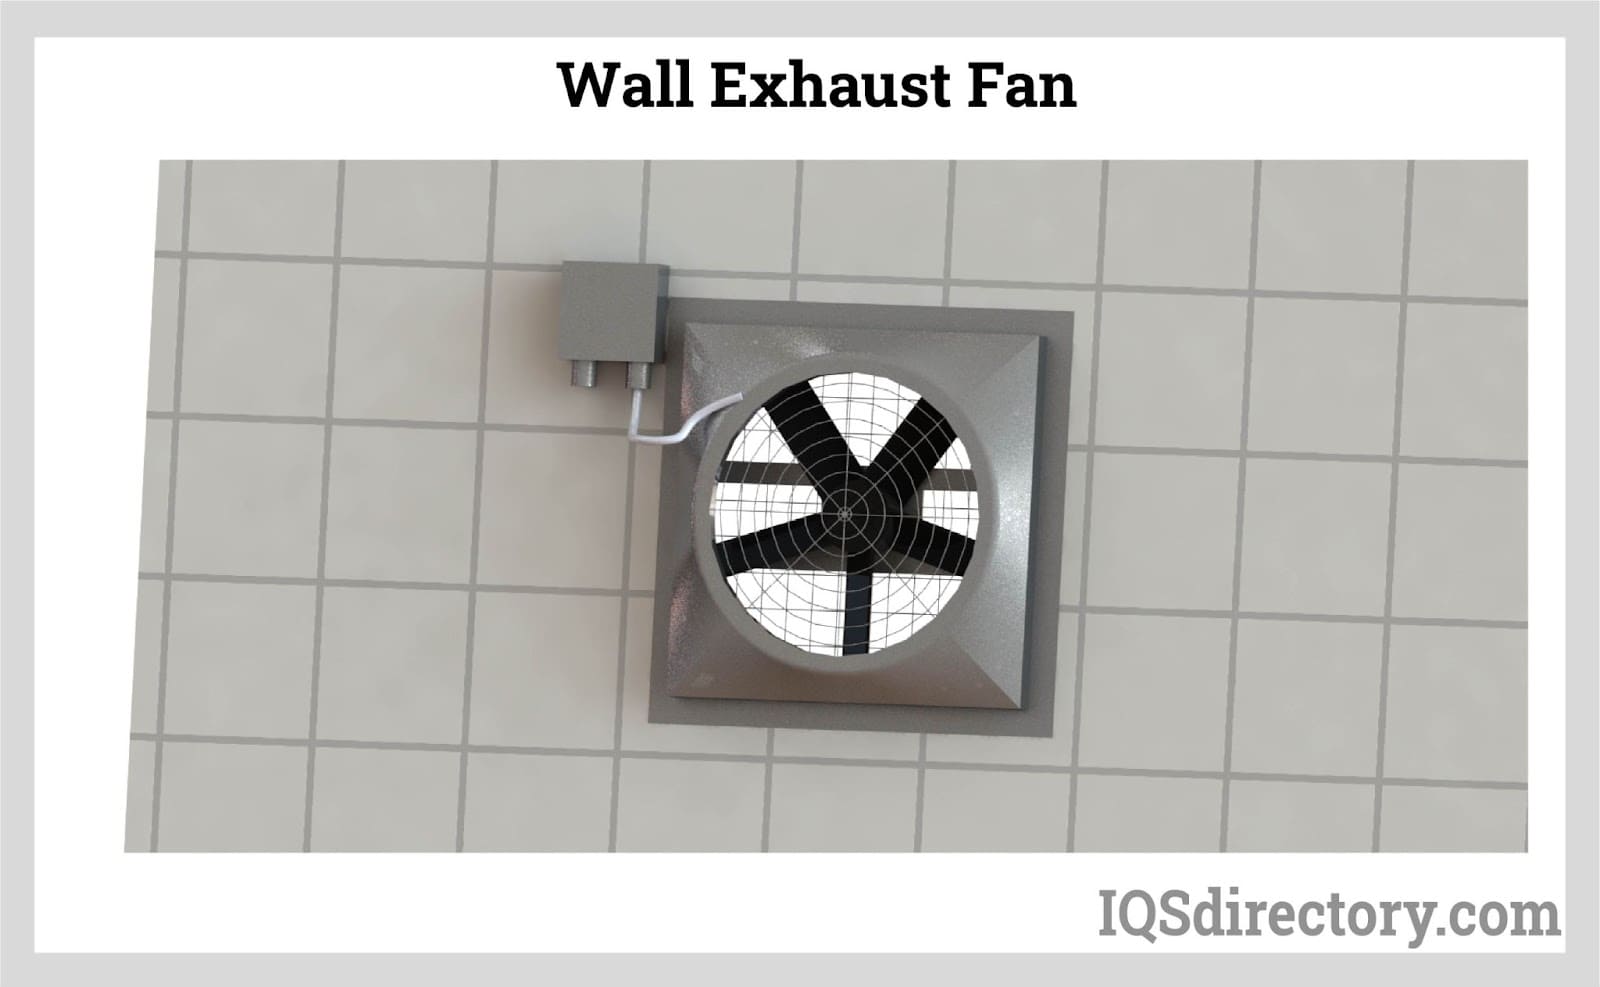 Wall Exhaust Fan